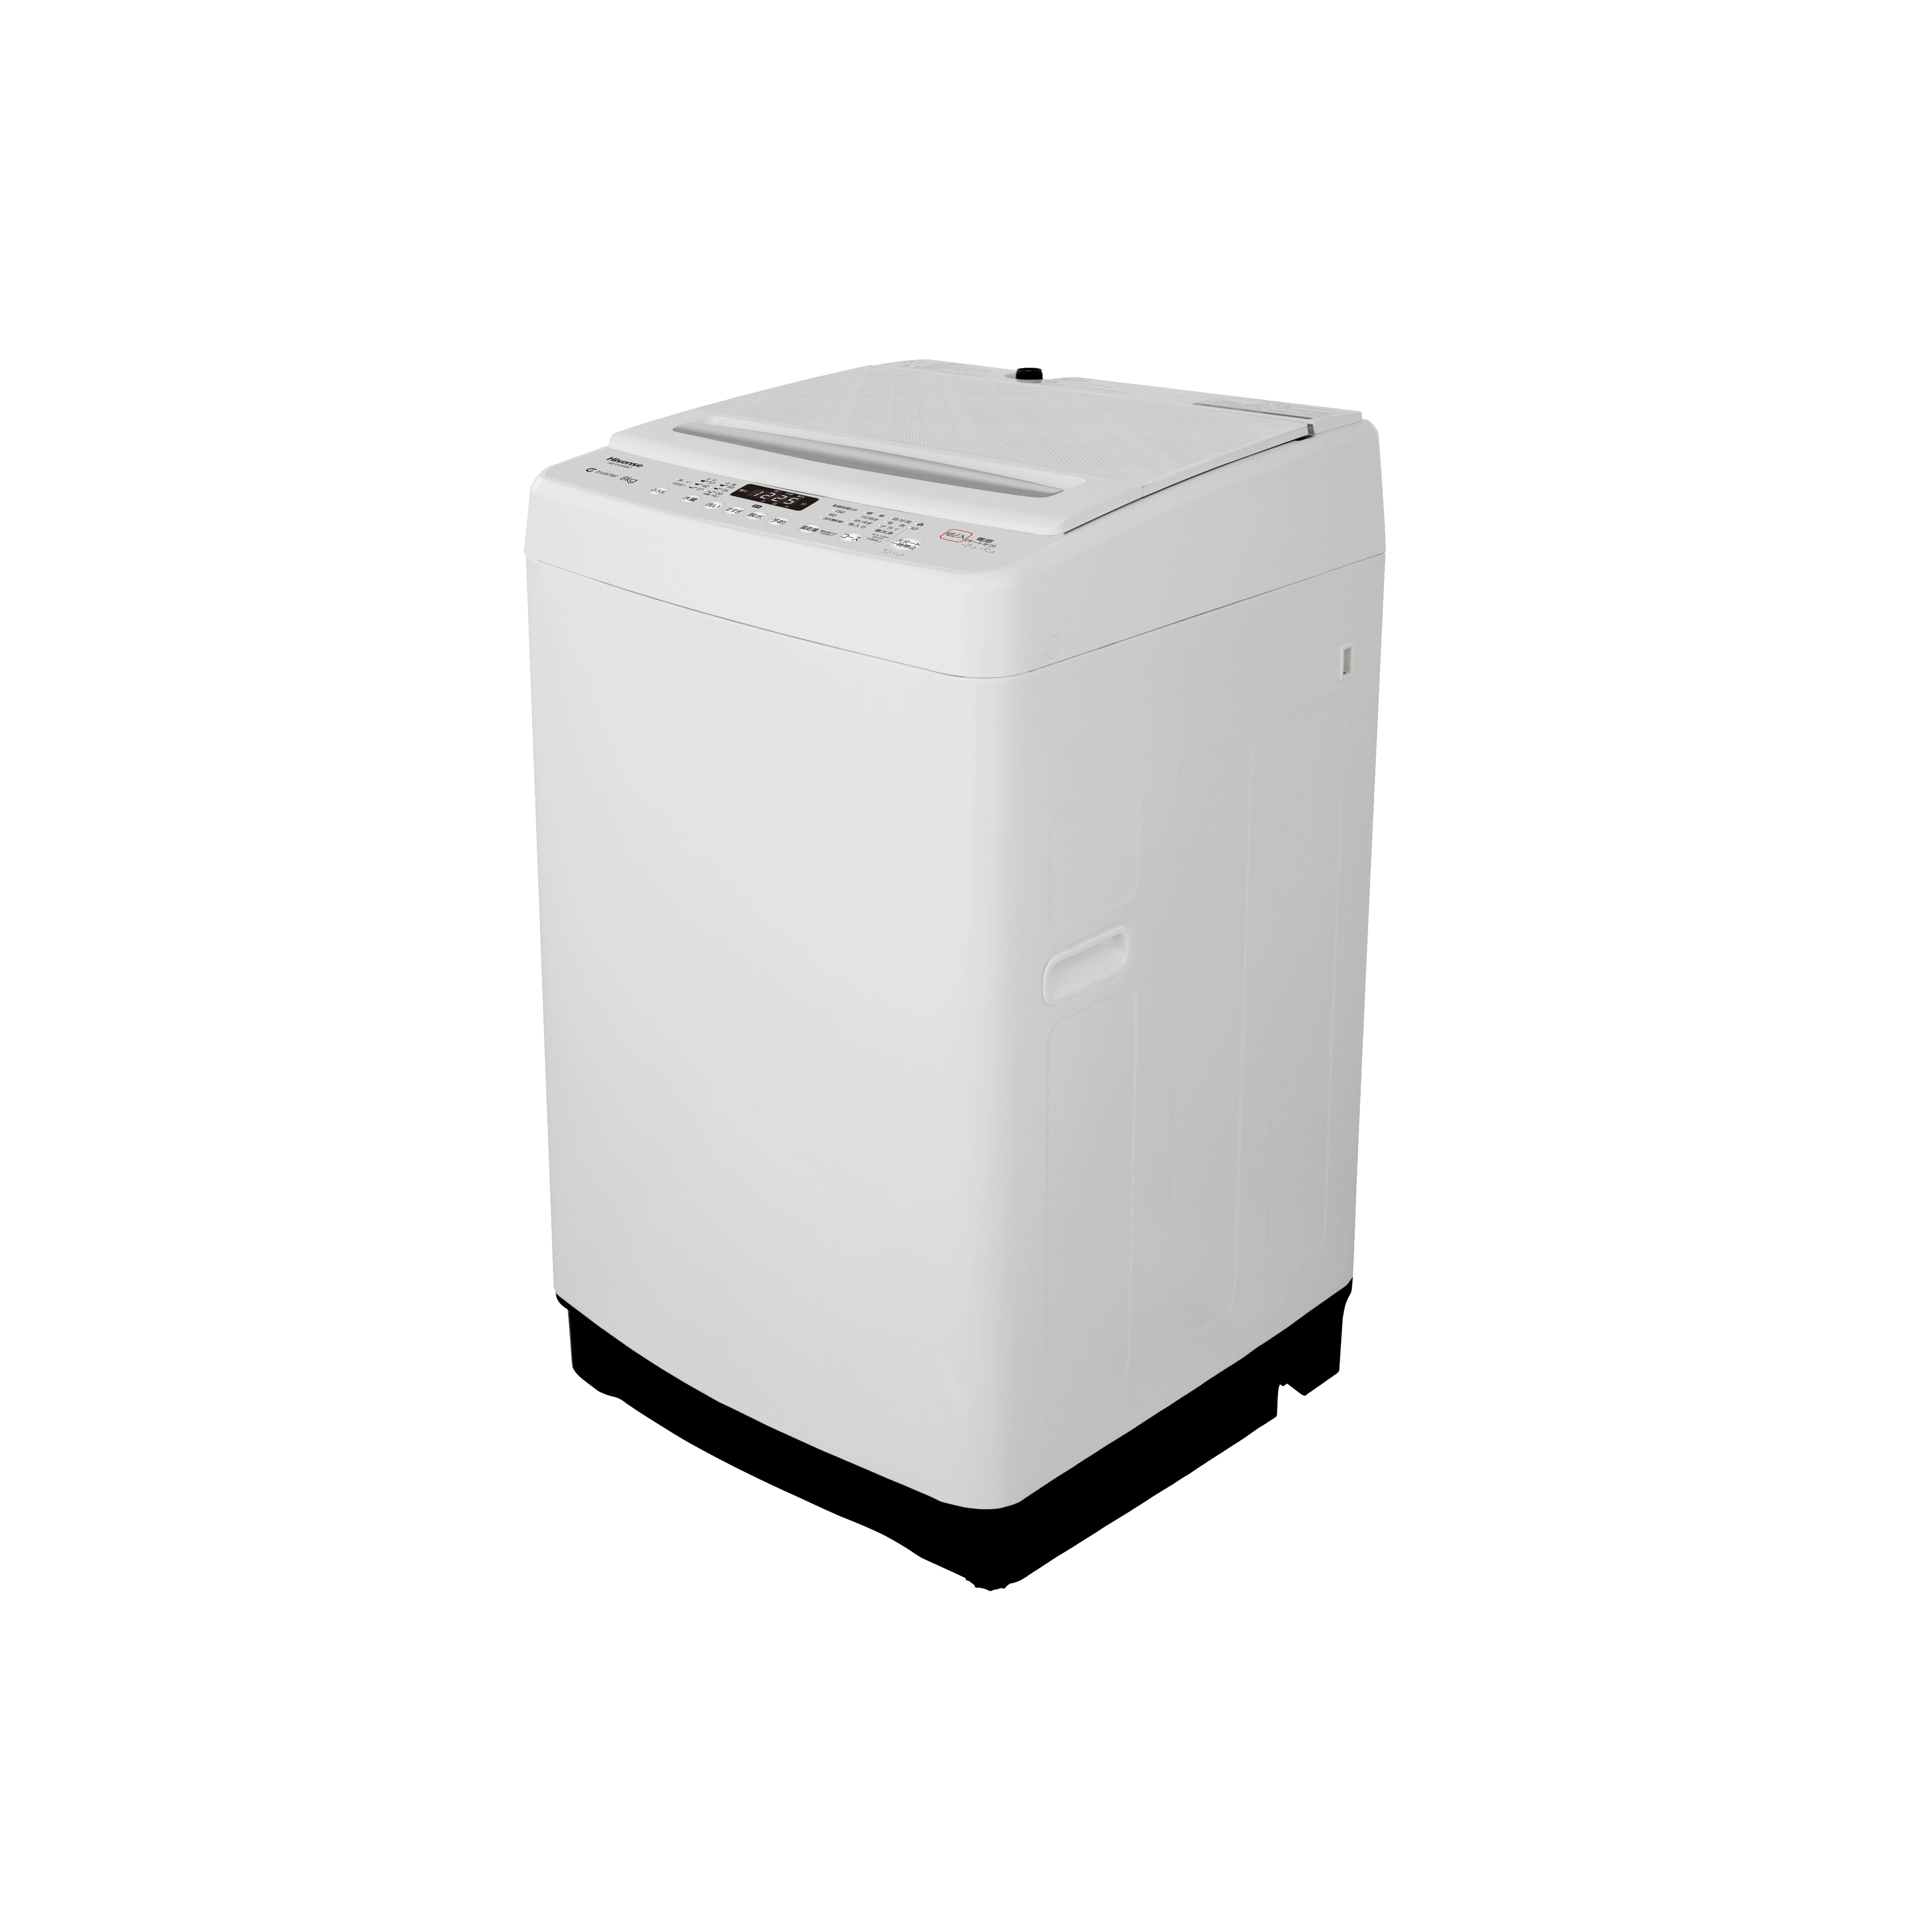 8kg 全自動洗濯機 HW-DG80BK1| ハイセンスジャパン株式会社